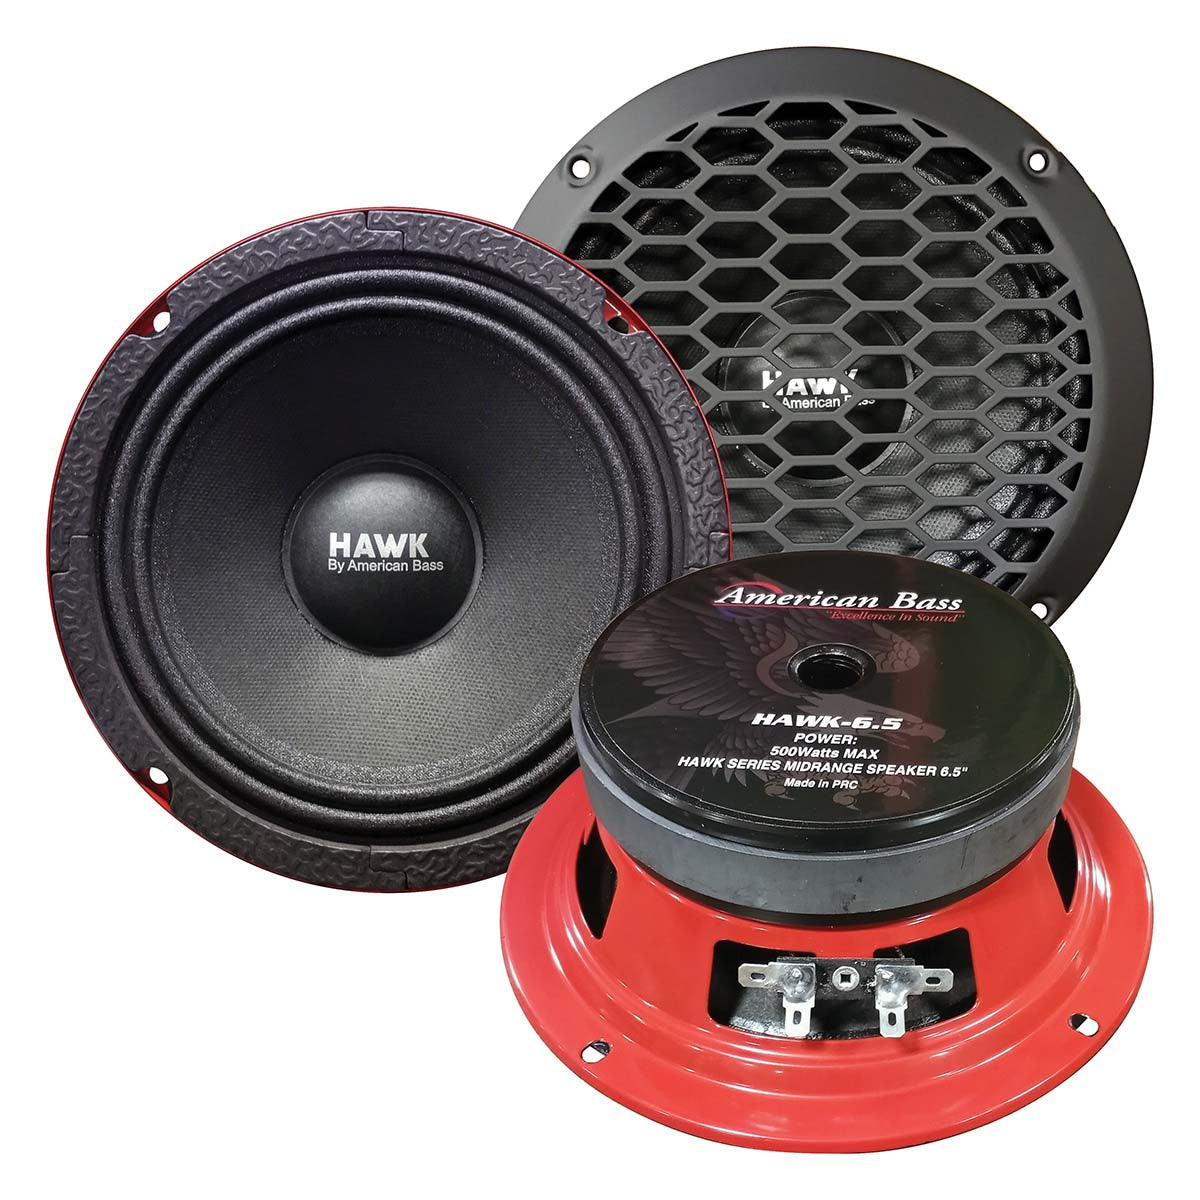 American Bass HAWK65 Hawk 6.5" Midrange Speaker, 500W Max, 4 Ohm